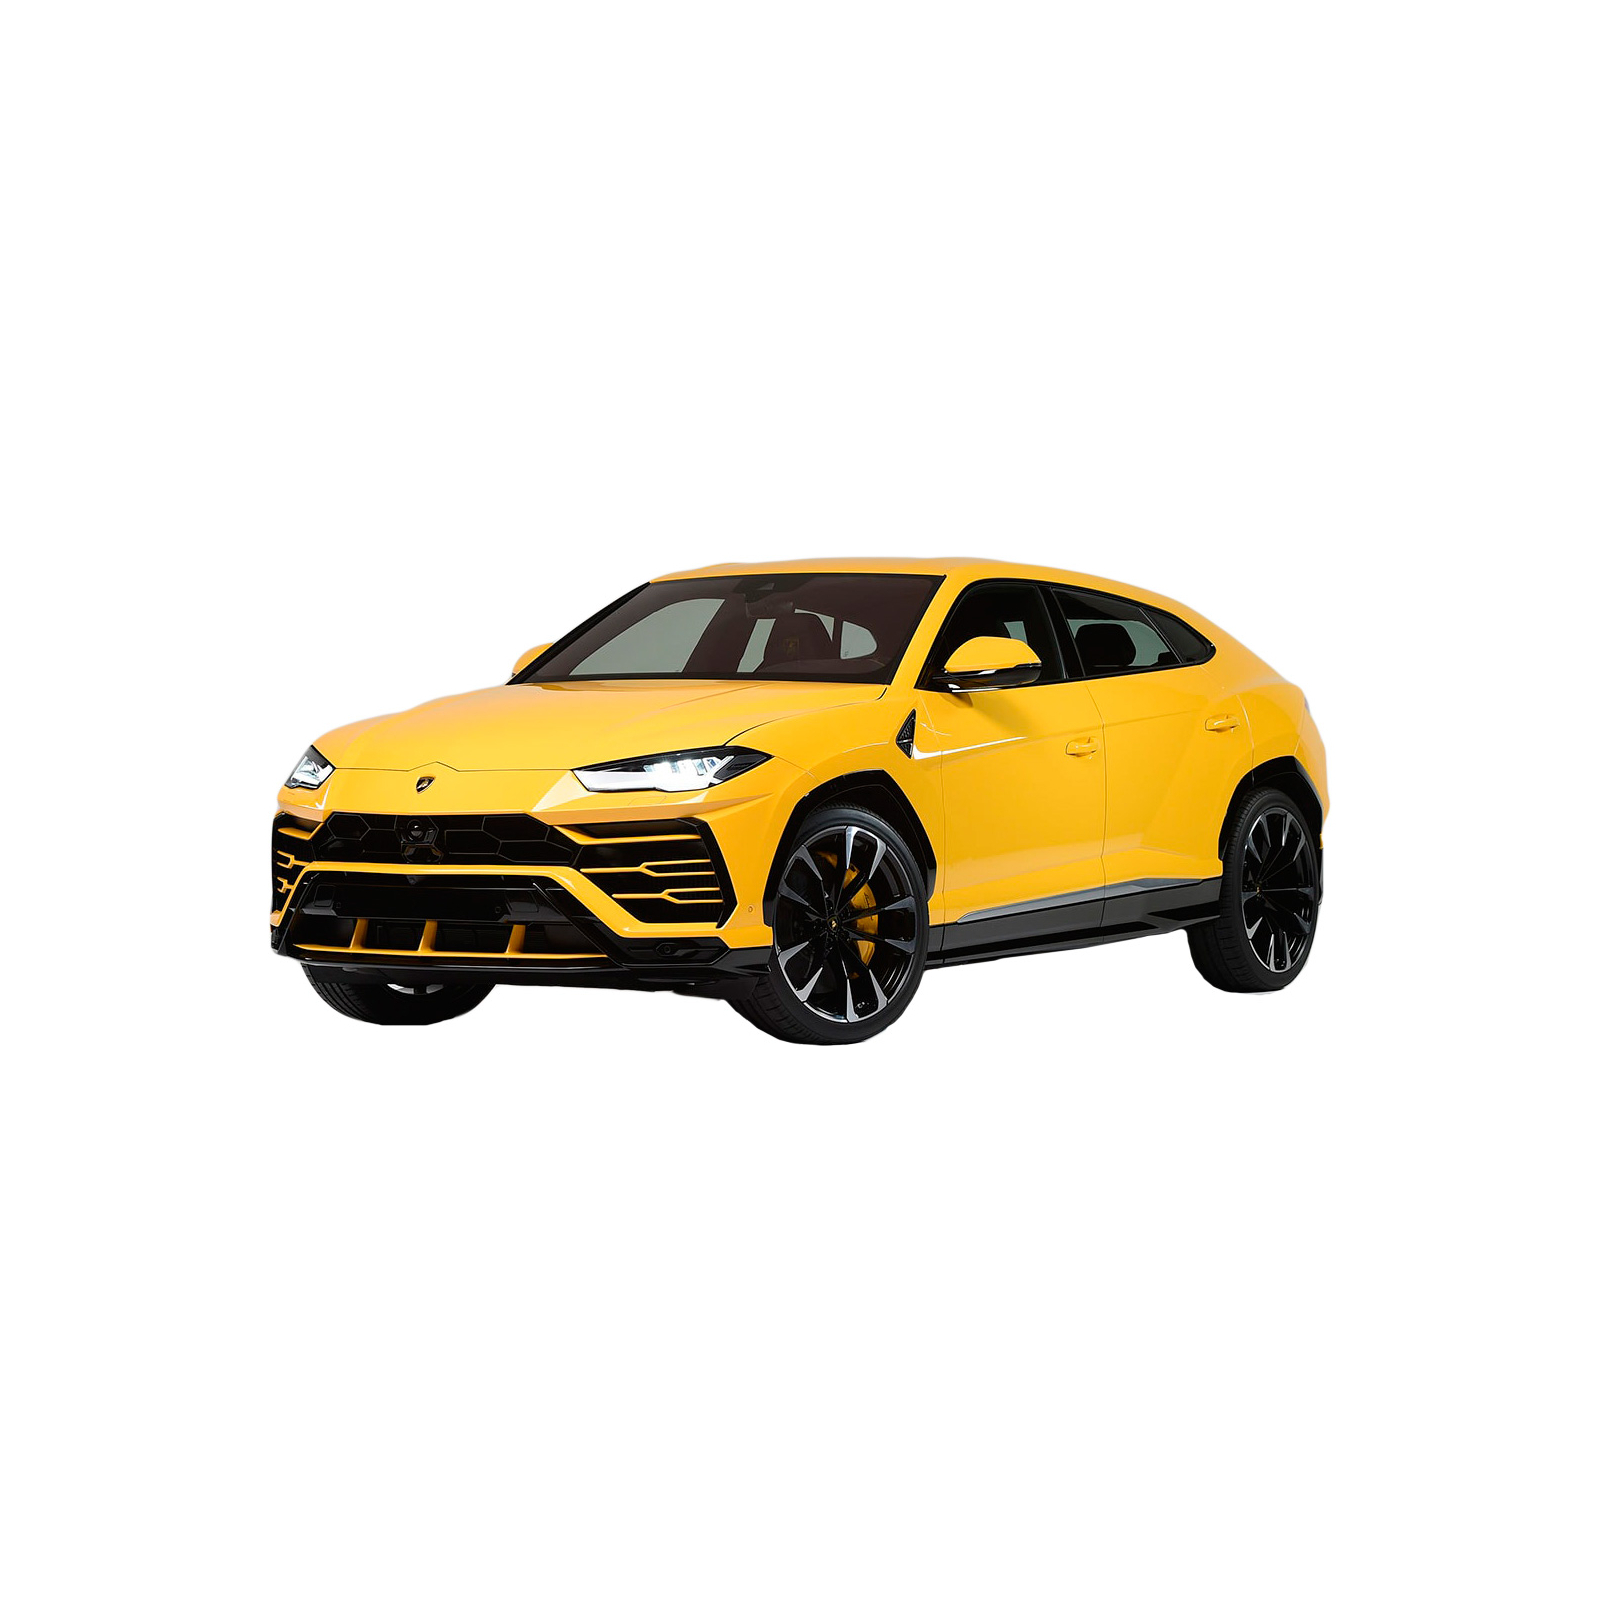 Машина Maisto Lamborghini Urus жёлтый 1:24 (31519 yellow)